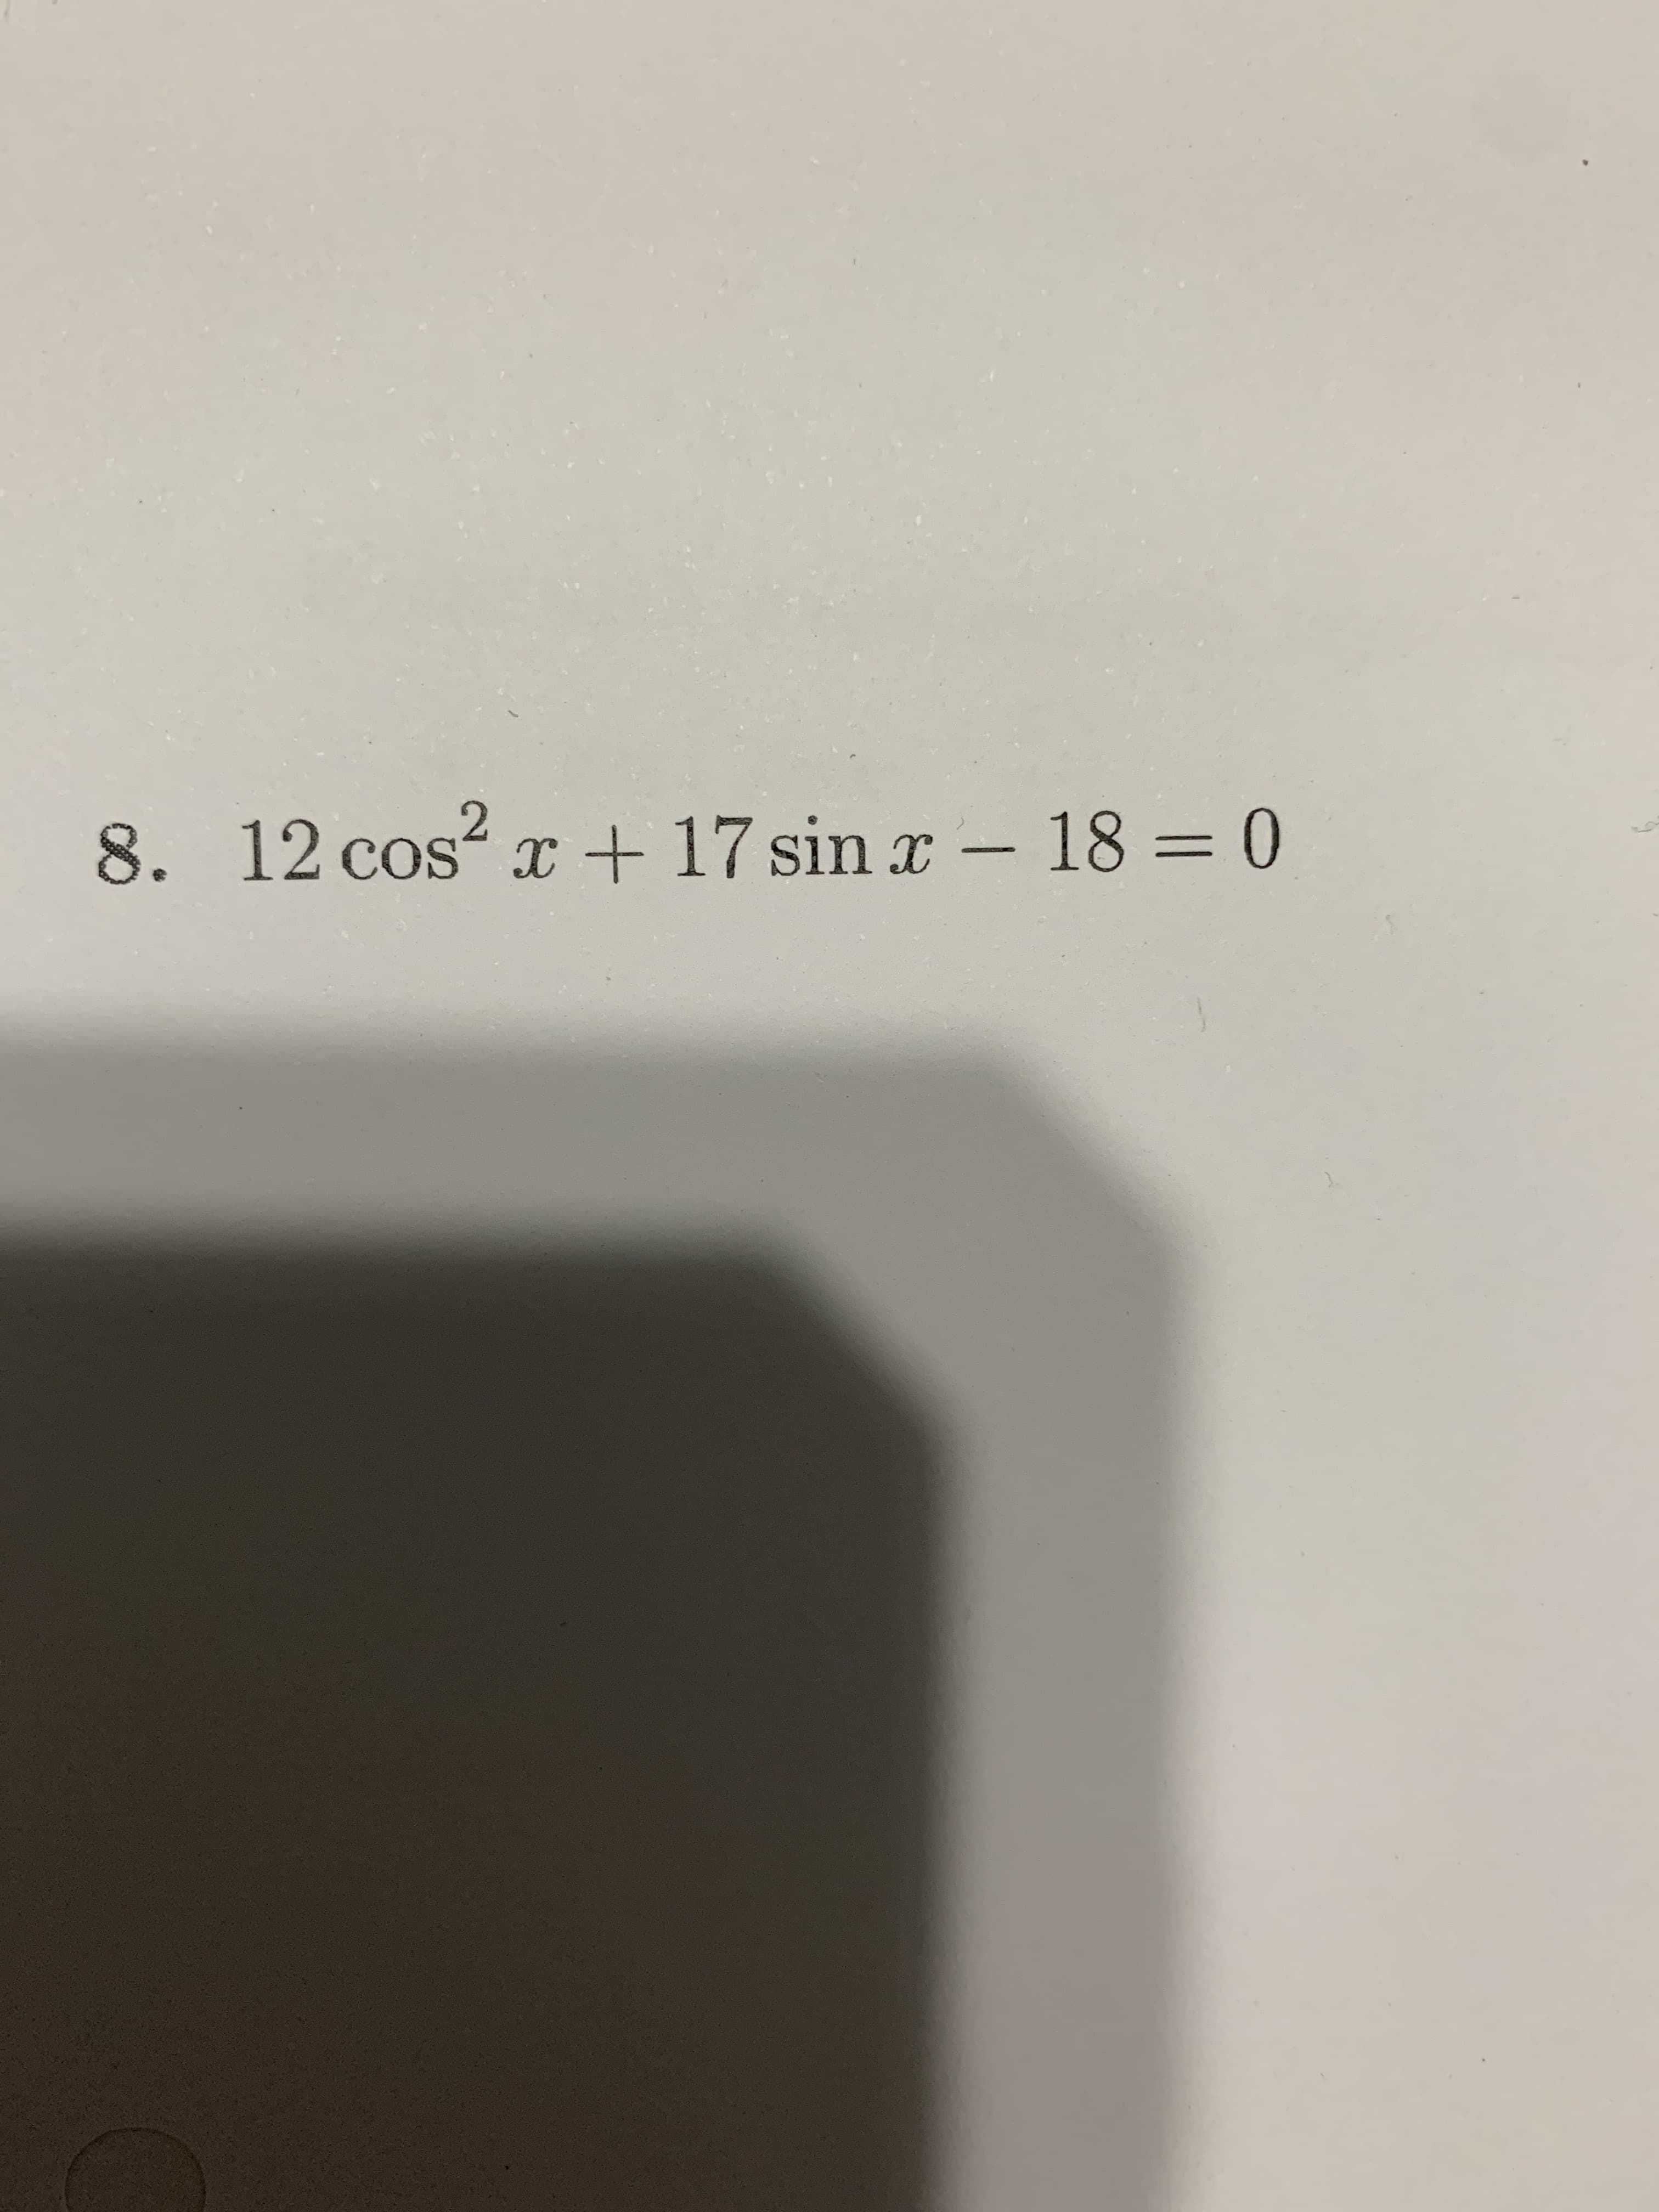 8. 12 cos2
+ 17 sin x - 18 = 0
